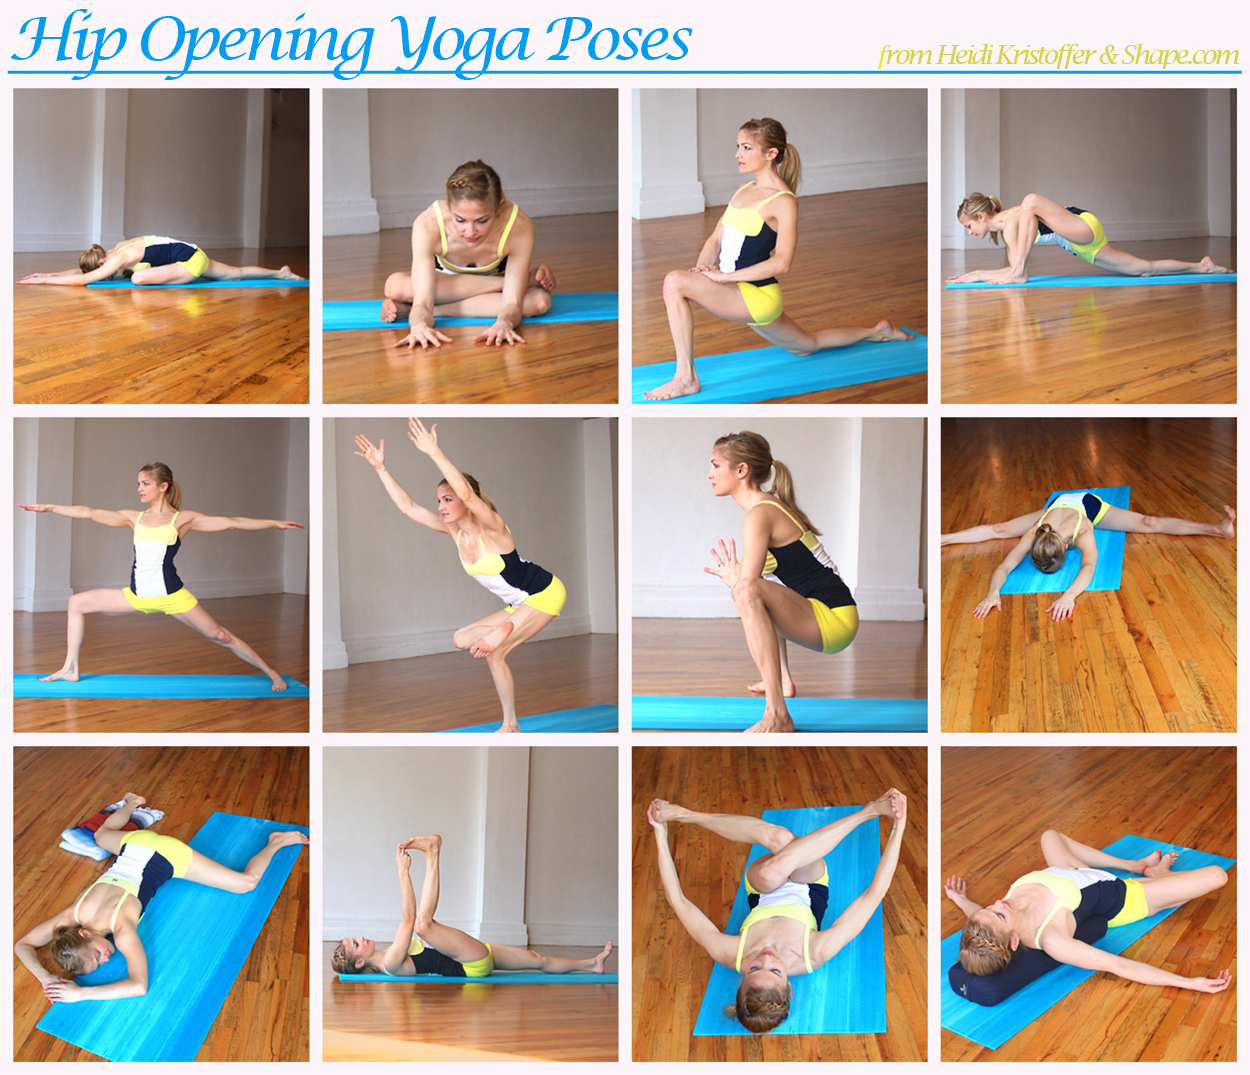  yoga on Pinterest | Yoga poses, Hip opening yoga and Bikram yoga poses